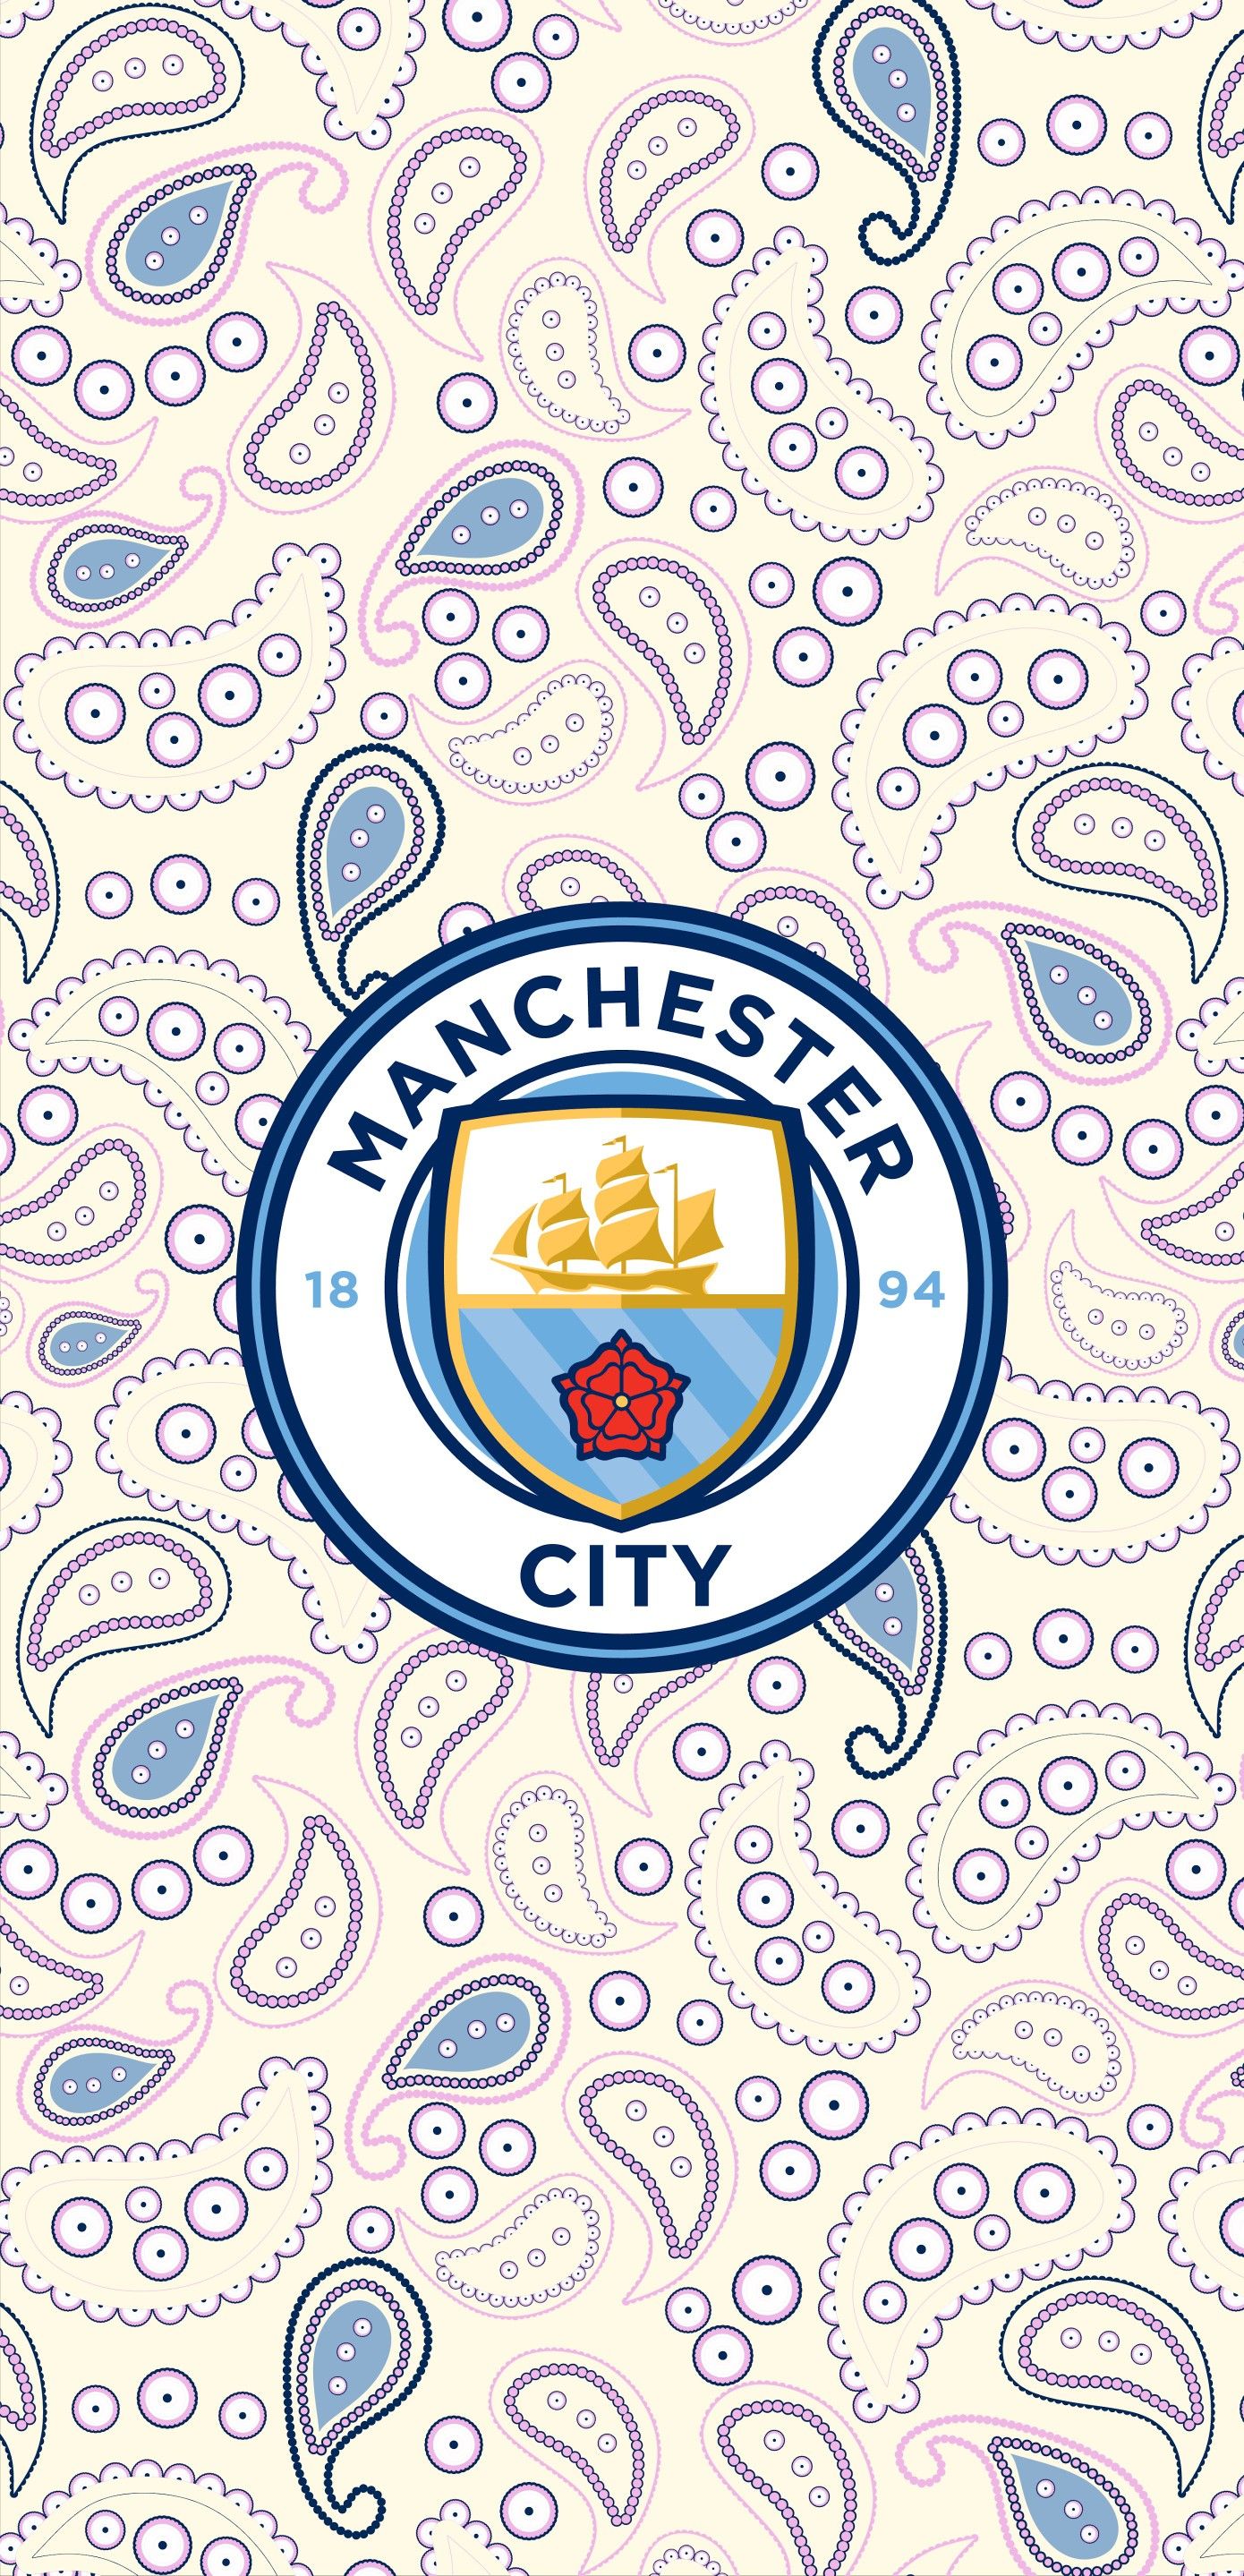 Manchester city wallpaper ideas. manchester city wallpaper, manchester city, city wallpaper